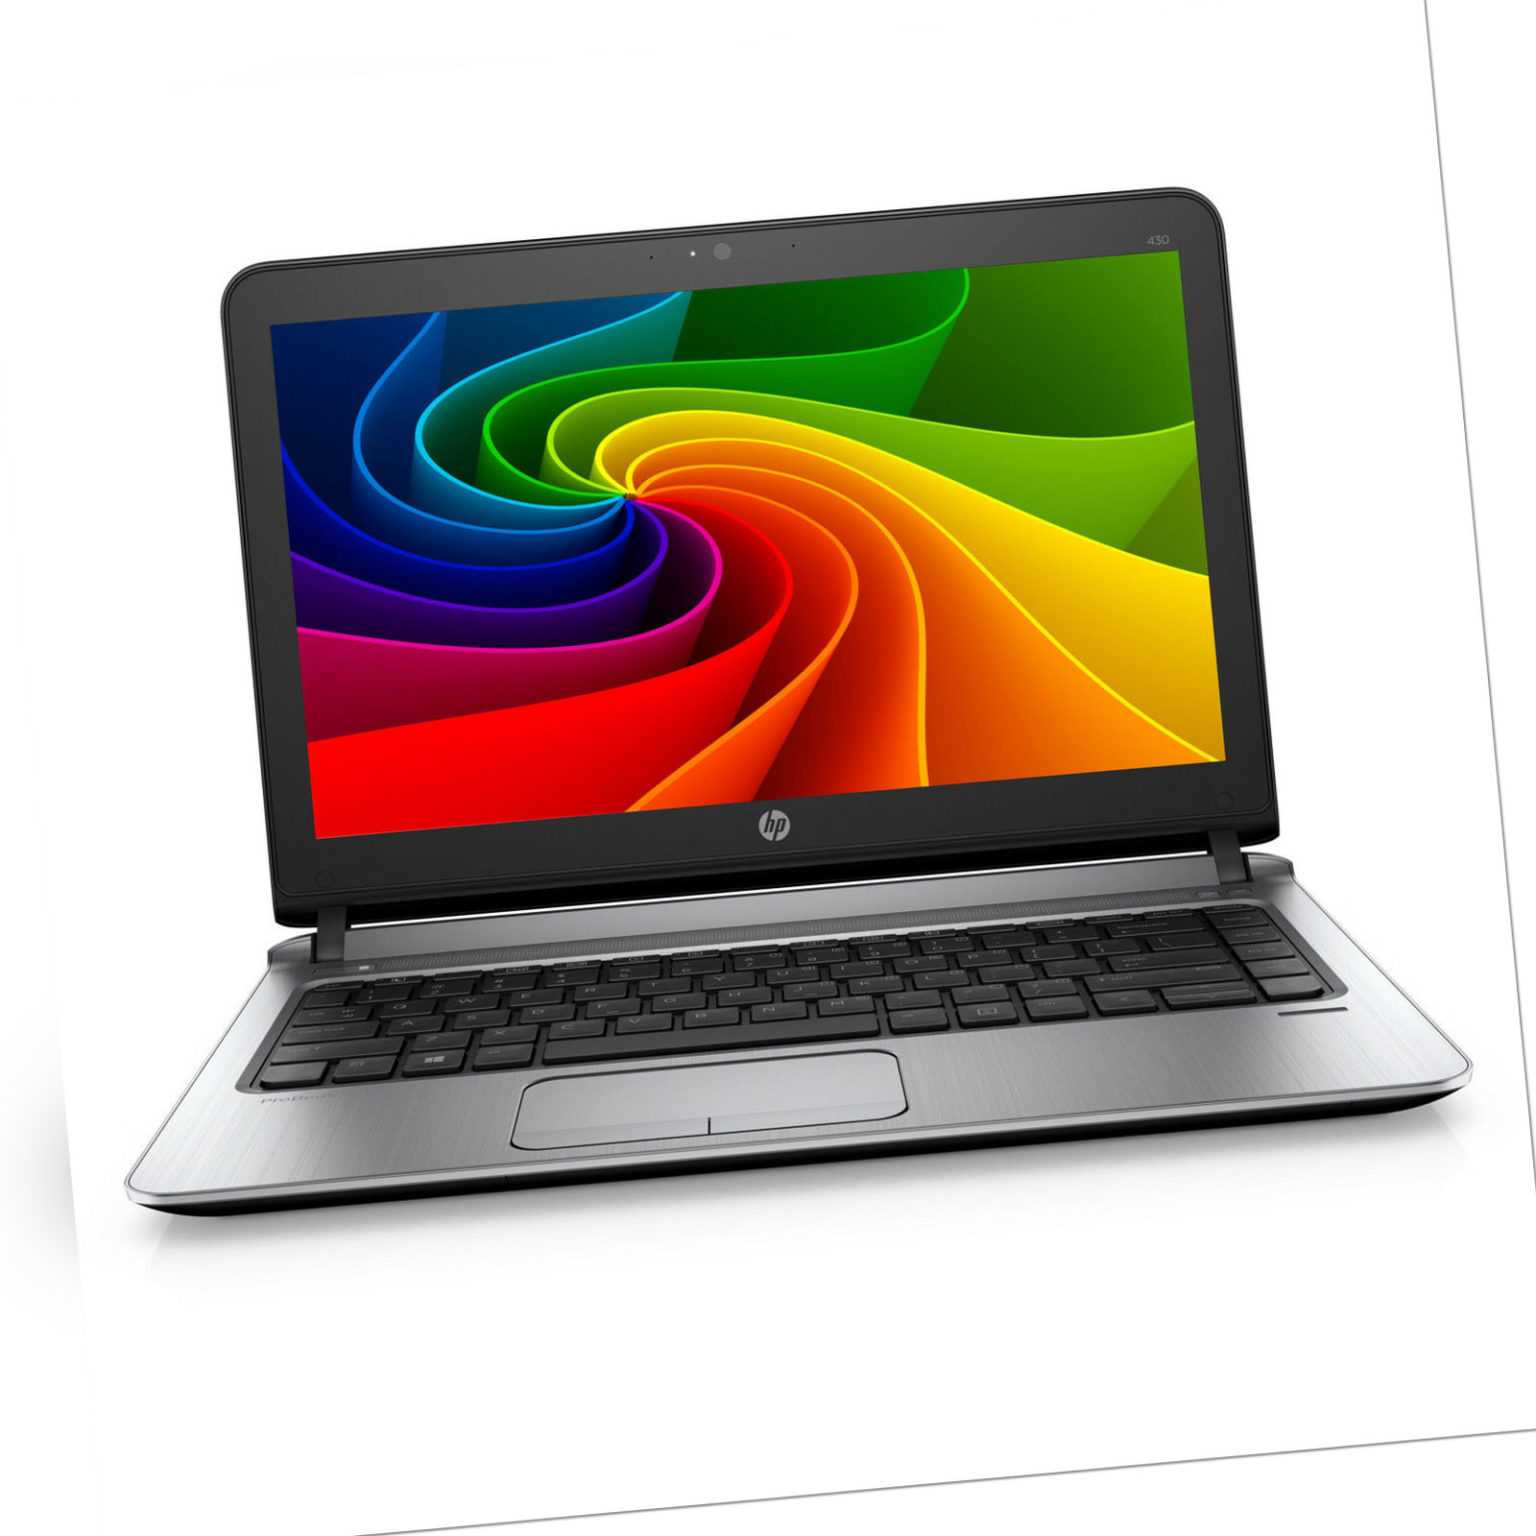 HP Probook 430 G3 i3-6100U 2,30 GHz 4GB DDR4 128GB SSD 1366x768 Windows10 Ware B